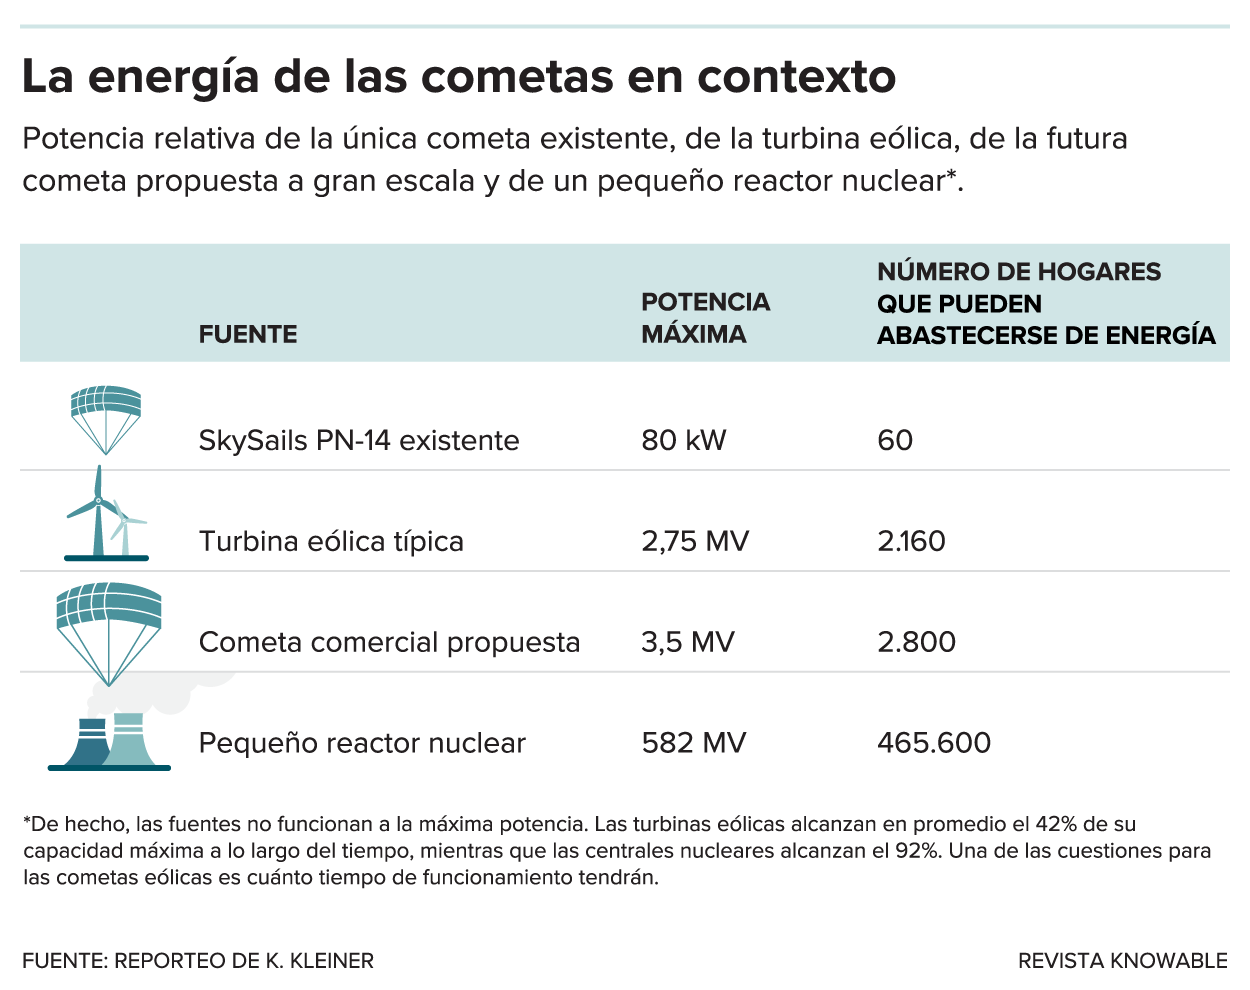 La tabla muestra la producción eléctrica relativa de una cometa SkySail existente (80 kilovatios, que pueden alimentar 60 hogares); una turbina eólica (2,75 megavatios, 2.160 hogares); la cometa SkySail de próxima generación propuesta (3,5 megavatios, 2.800 hogares); y un pequeño reactor nuclear (582 megavatios, 465.600 hogares). 